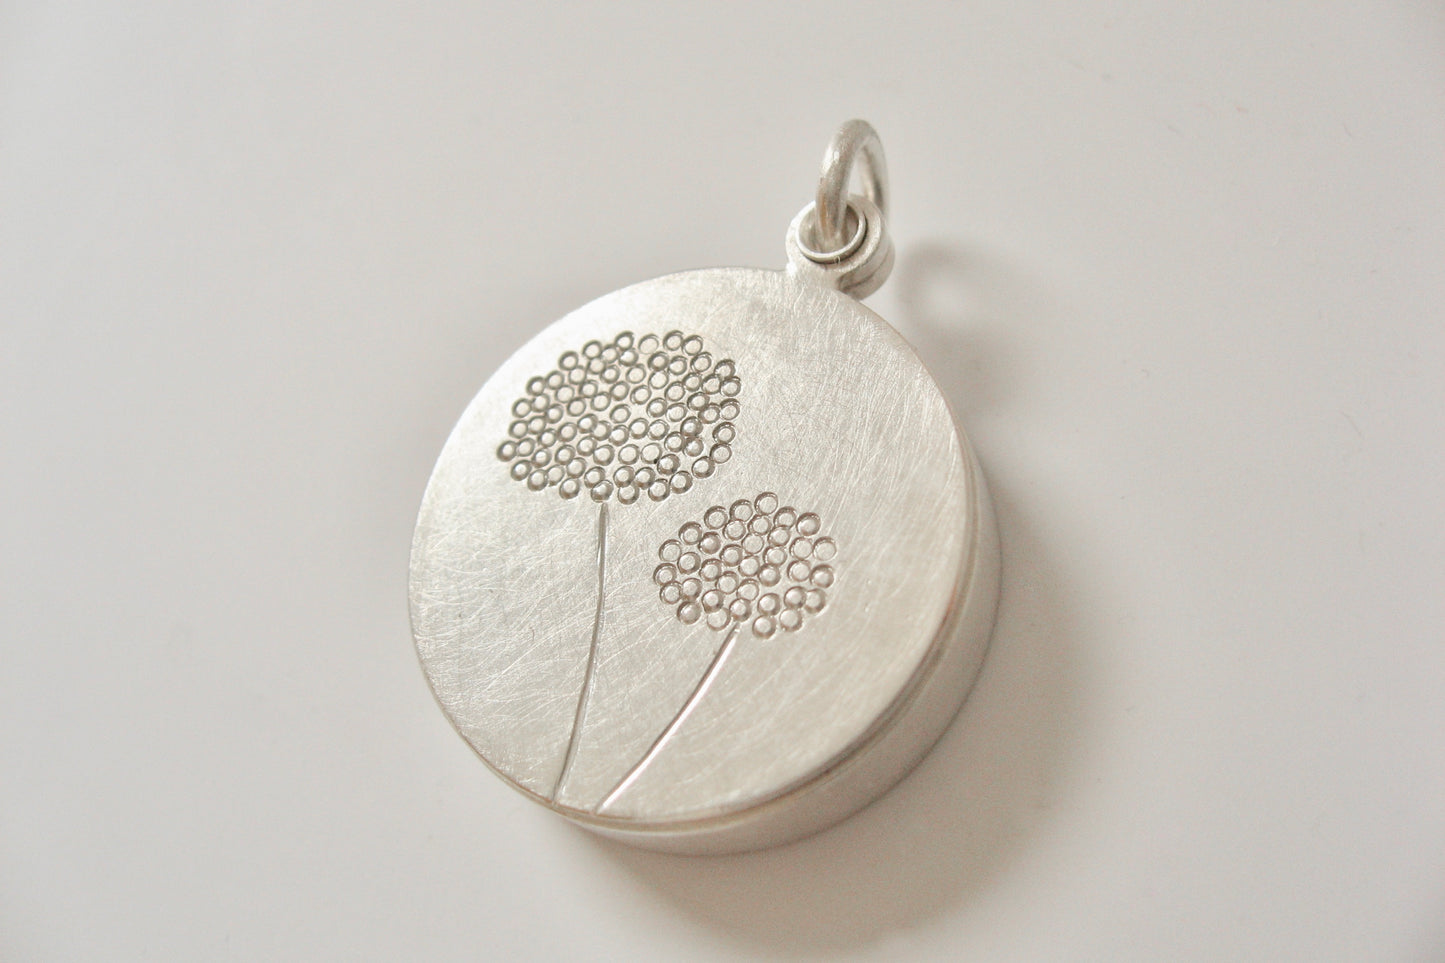 wunderschönes Medaillon mit Vergissmeinnicht-Samen und Pusteblumen aus Sterling Silber